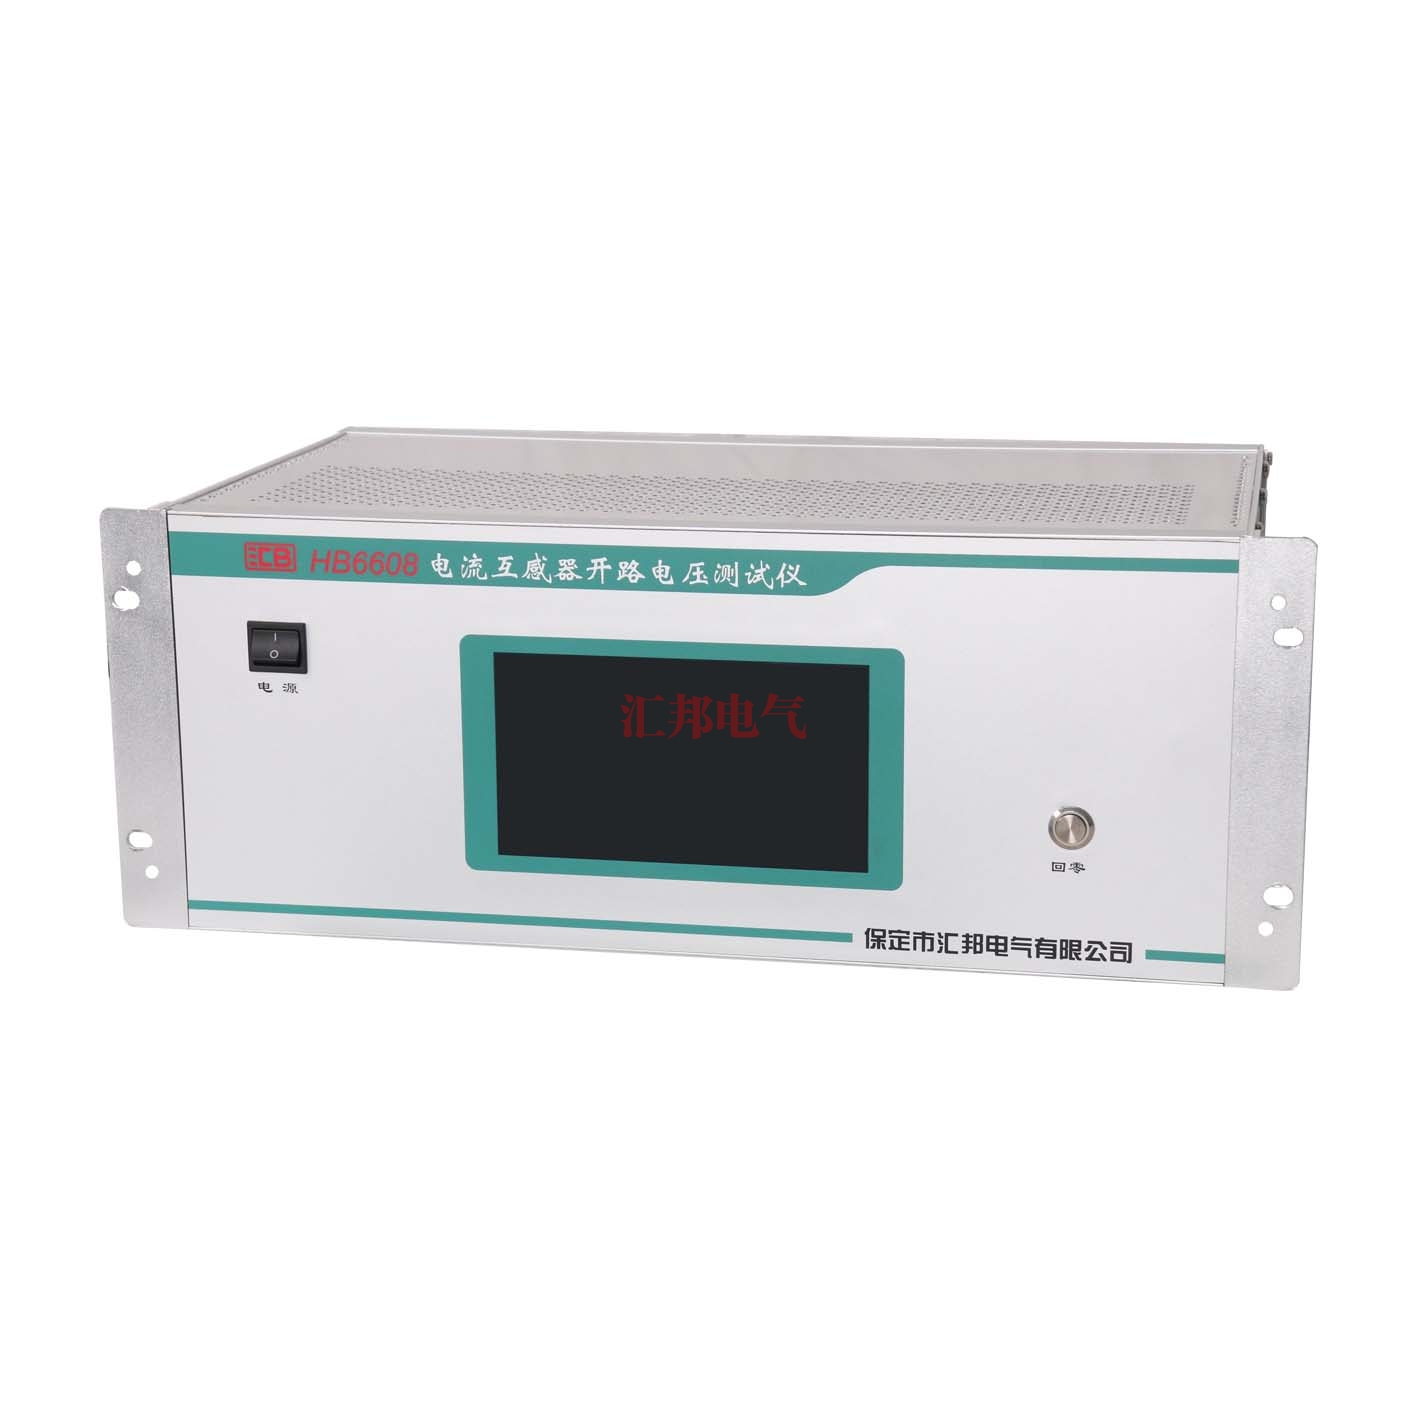 HB6608   电流互感器开路电压测试仪